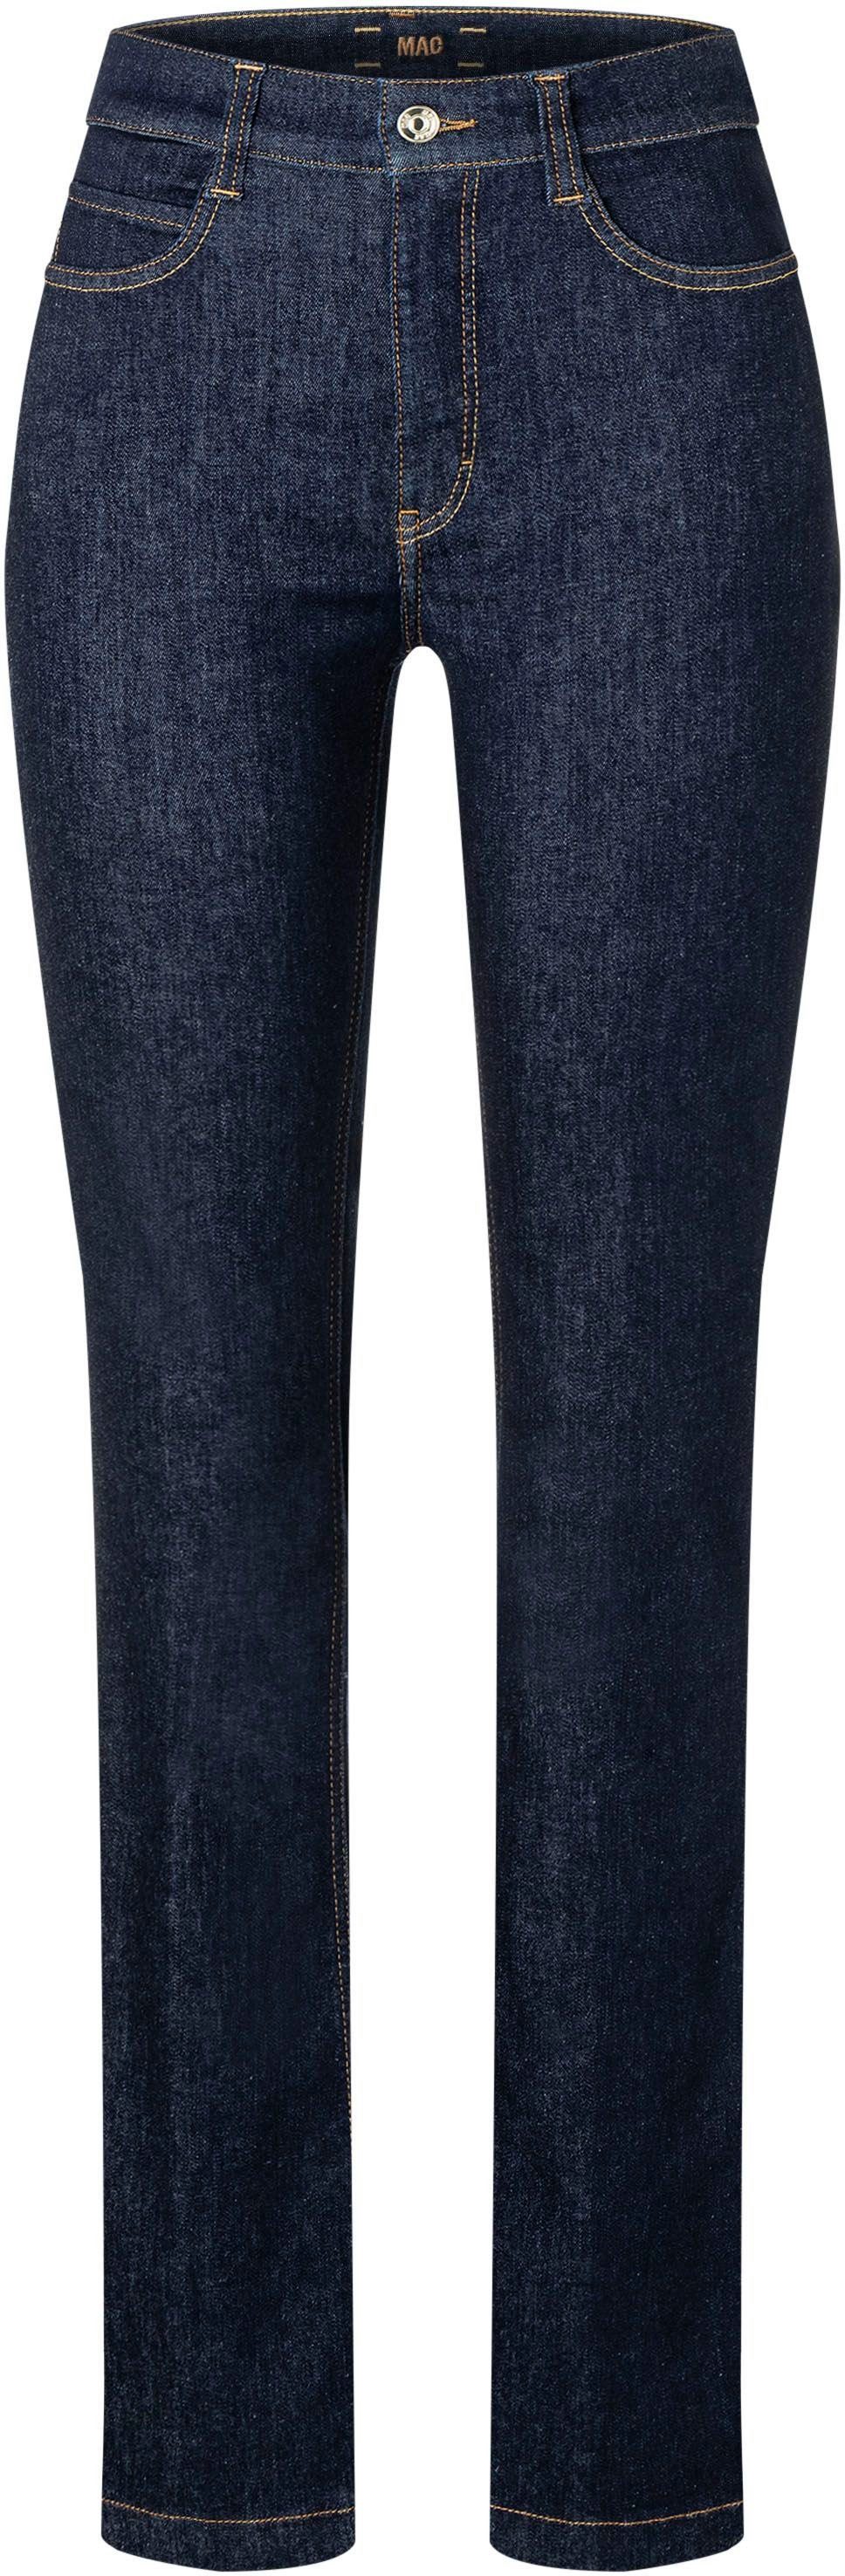 MAC High-waist-Jeans BOOT fashionrinse